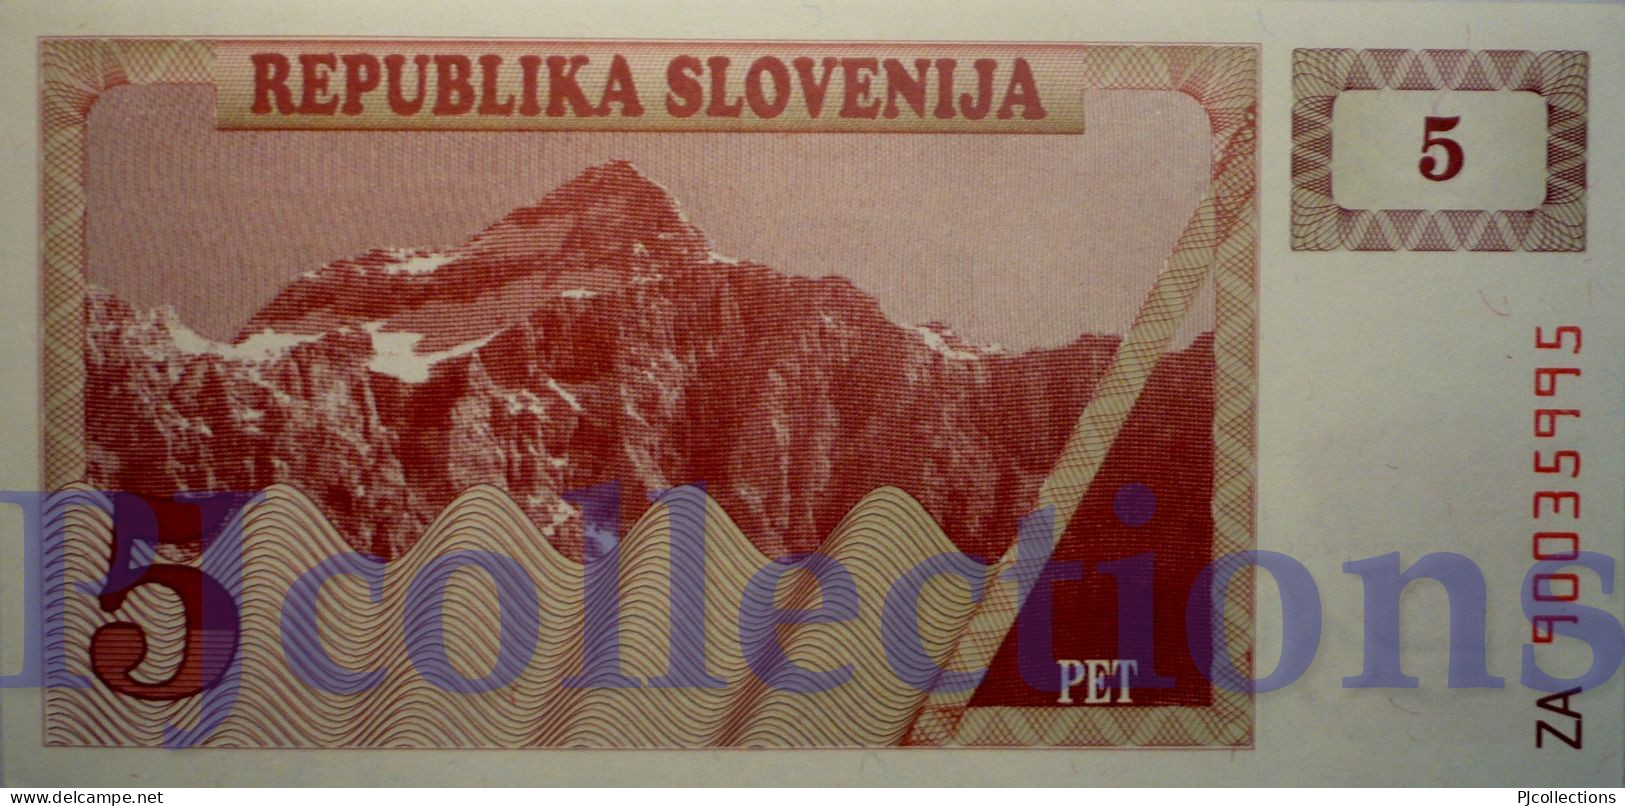 SLOVENIA 5 TOLARJEV 1990 PICK 3a REPLACEMENT UNC RARE - Eslovenia